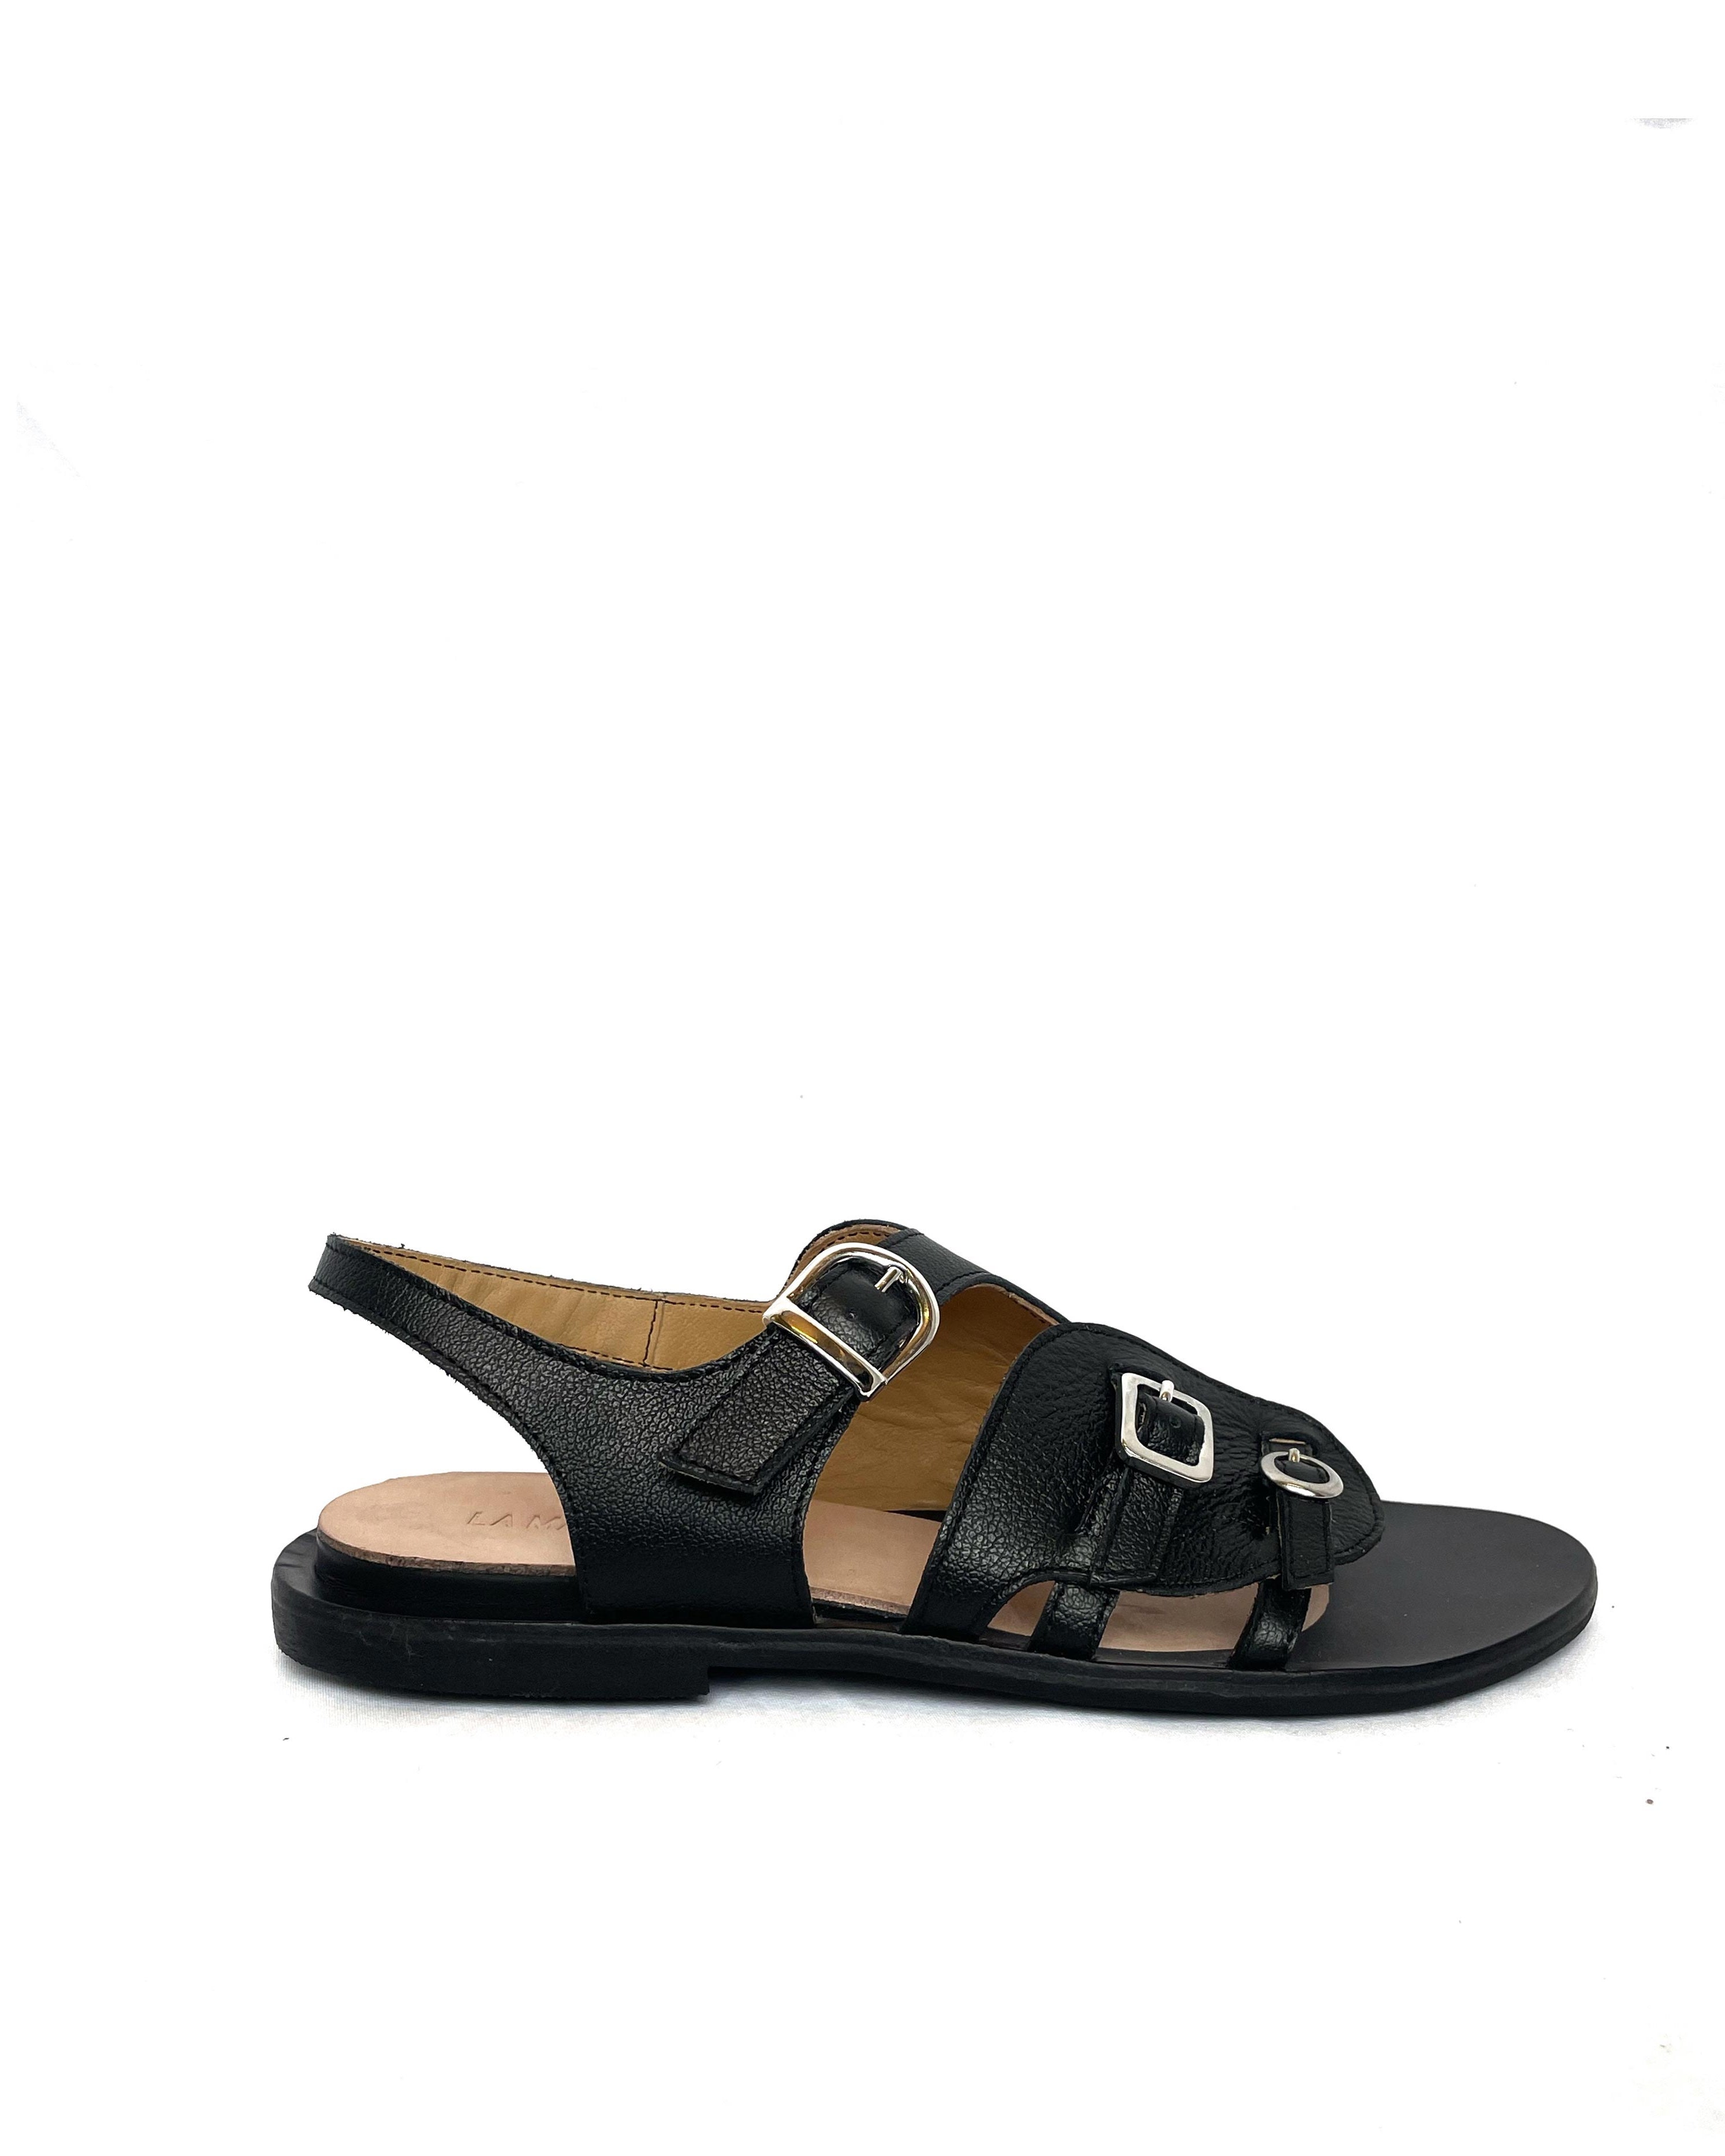 sandalo unisex pelle nero con fibbia comodo calzata standard